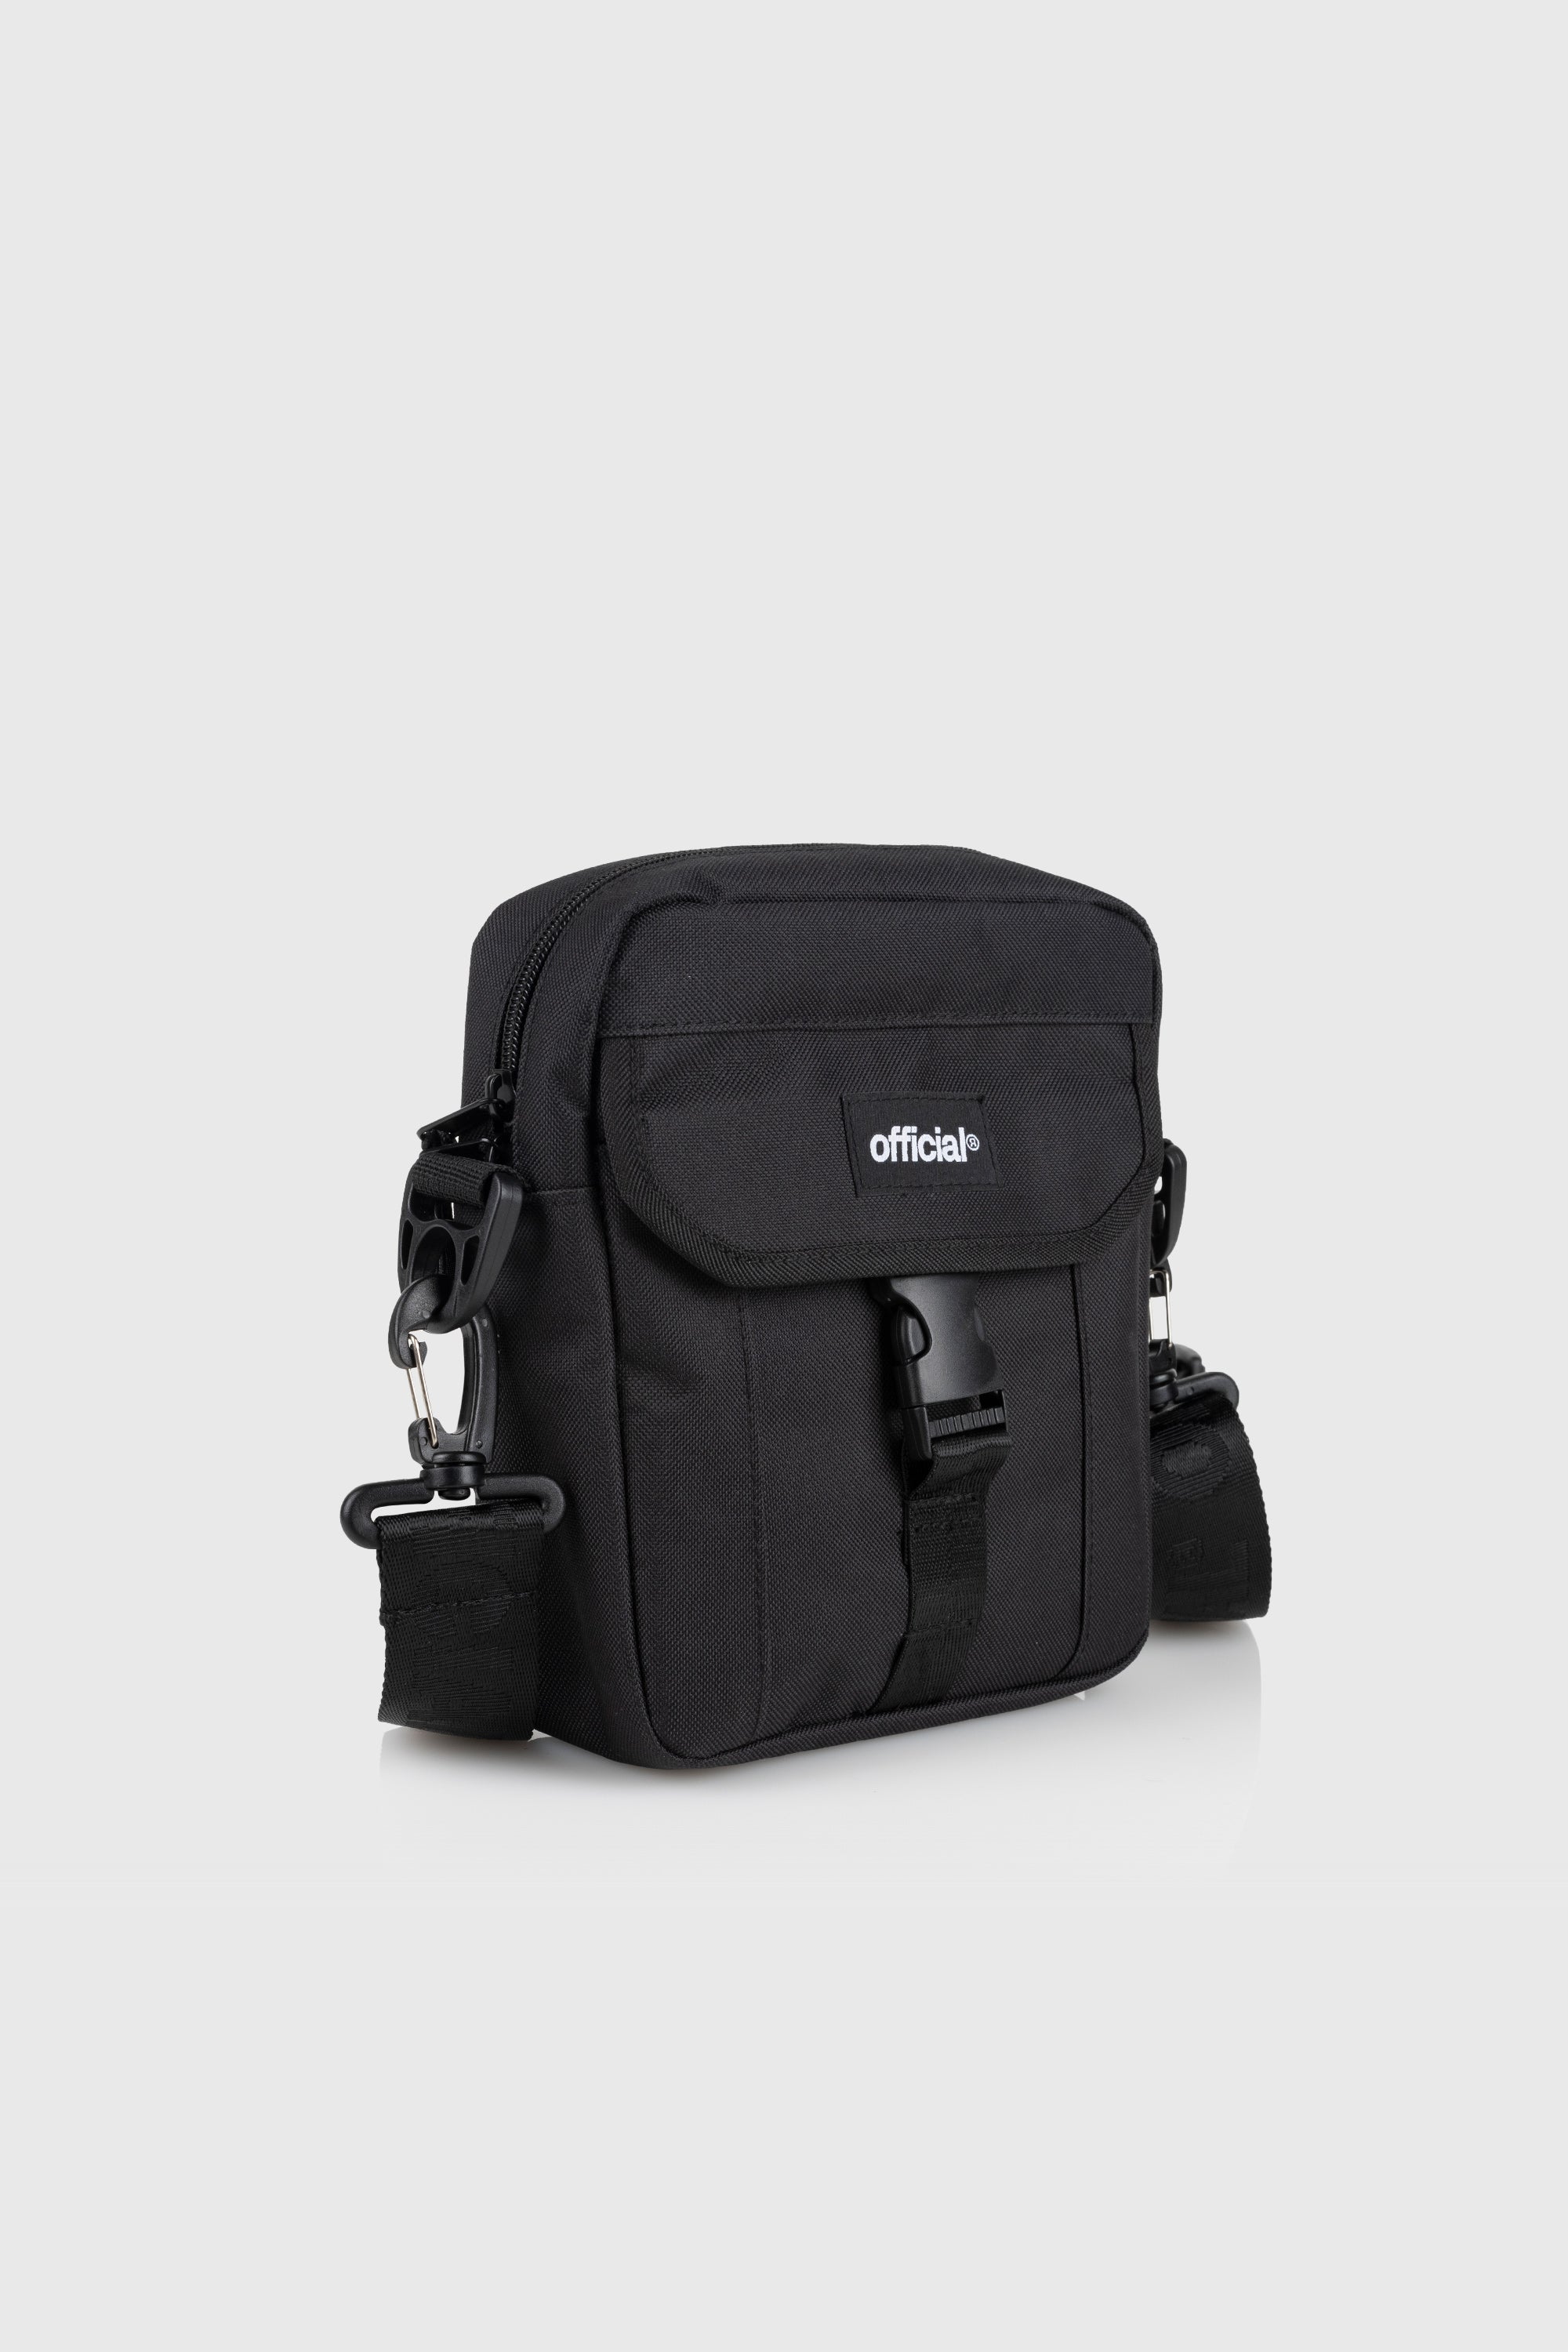 Essential Shoulder Bag (Black) - The Official Brand